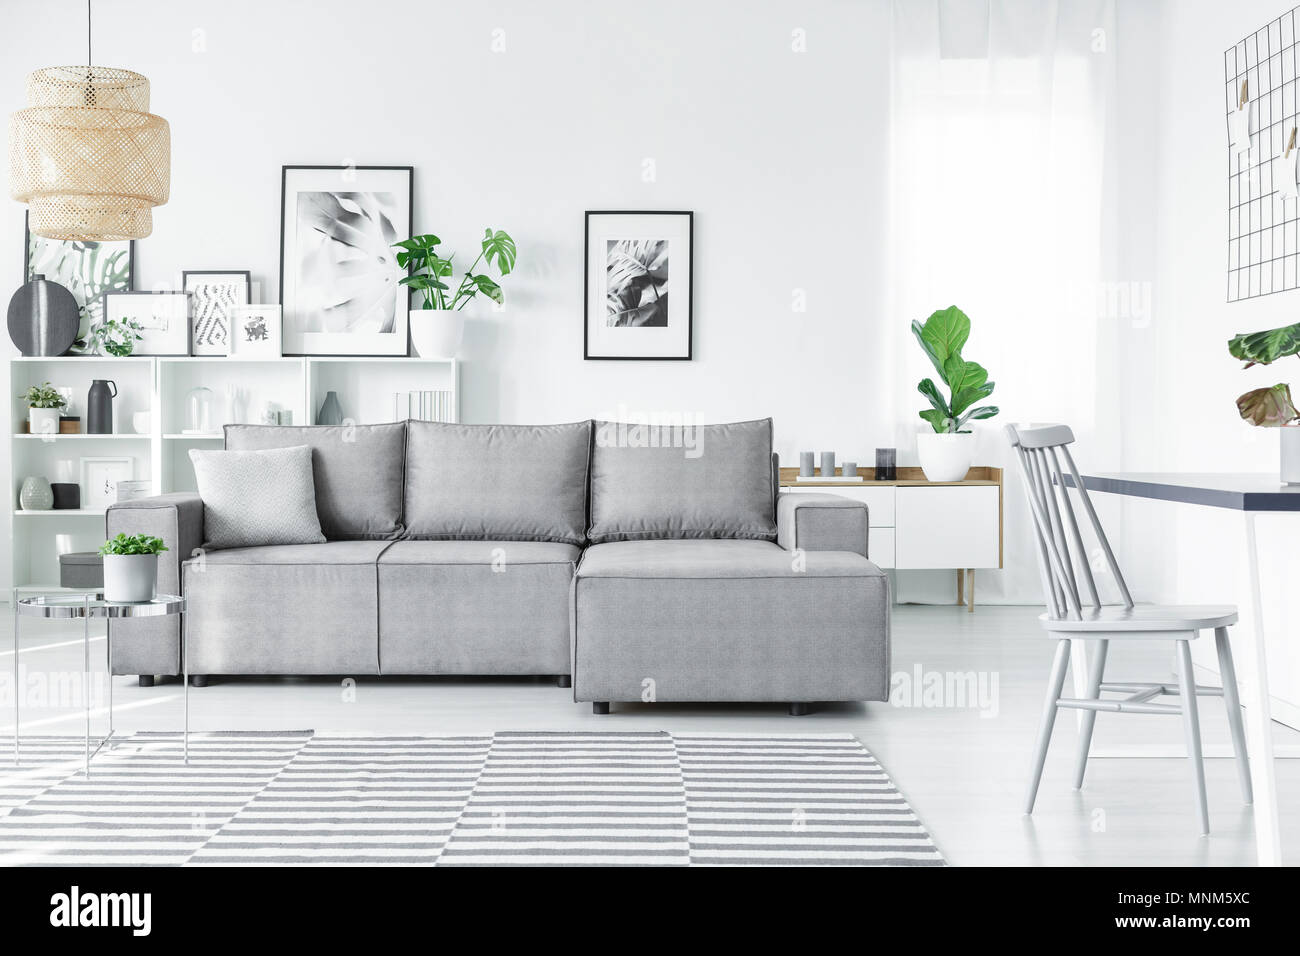 Salon scandinave intérieur avec un confortable canapé d'angle, des peintures, des plantes et des tapis à rayures Banque D'Images